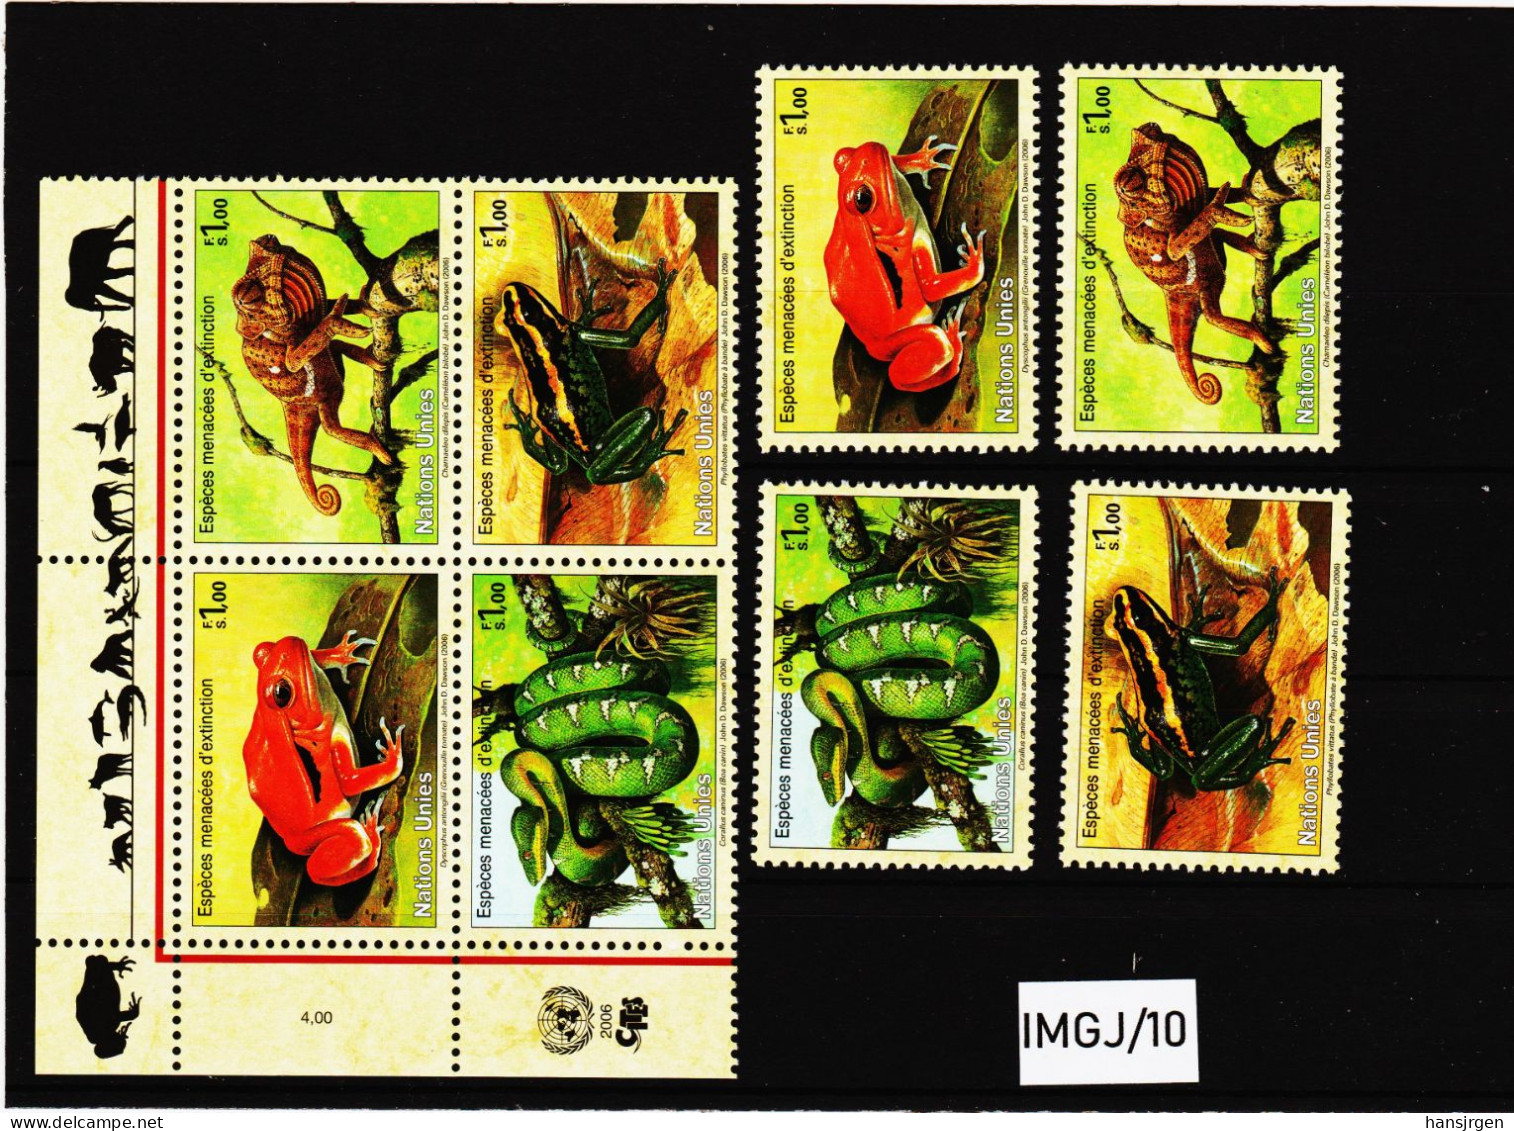 IMGJ/10 UNO GENF 2006 MICHL  537/40  Postfrisch ** SIEHE ABBILDUNG - Unused Stamps